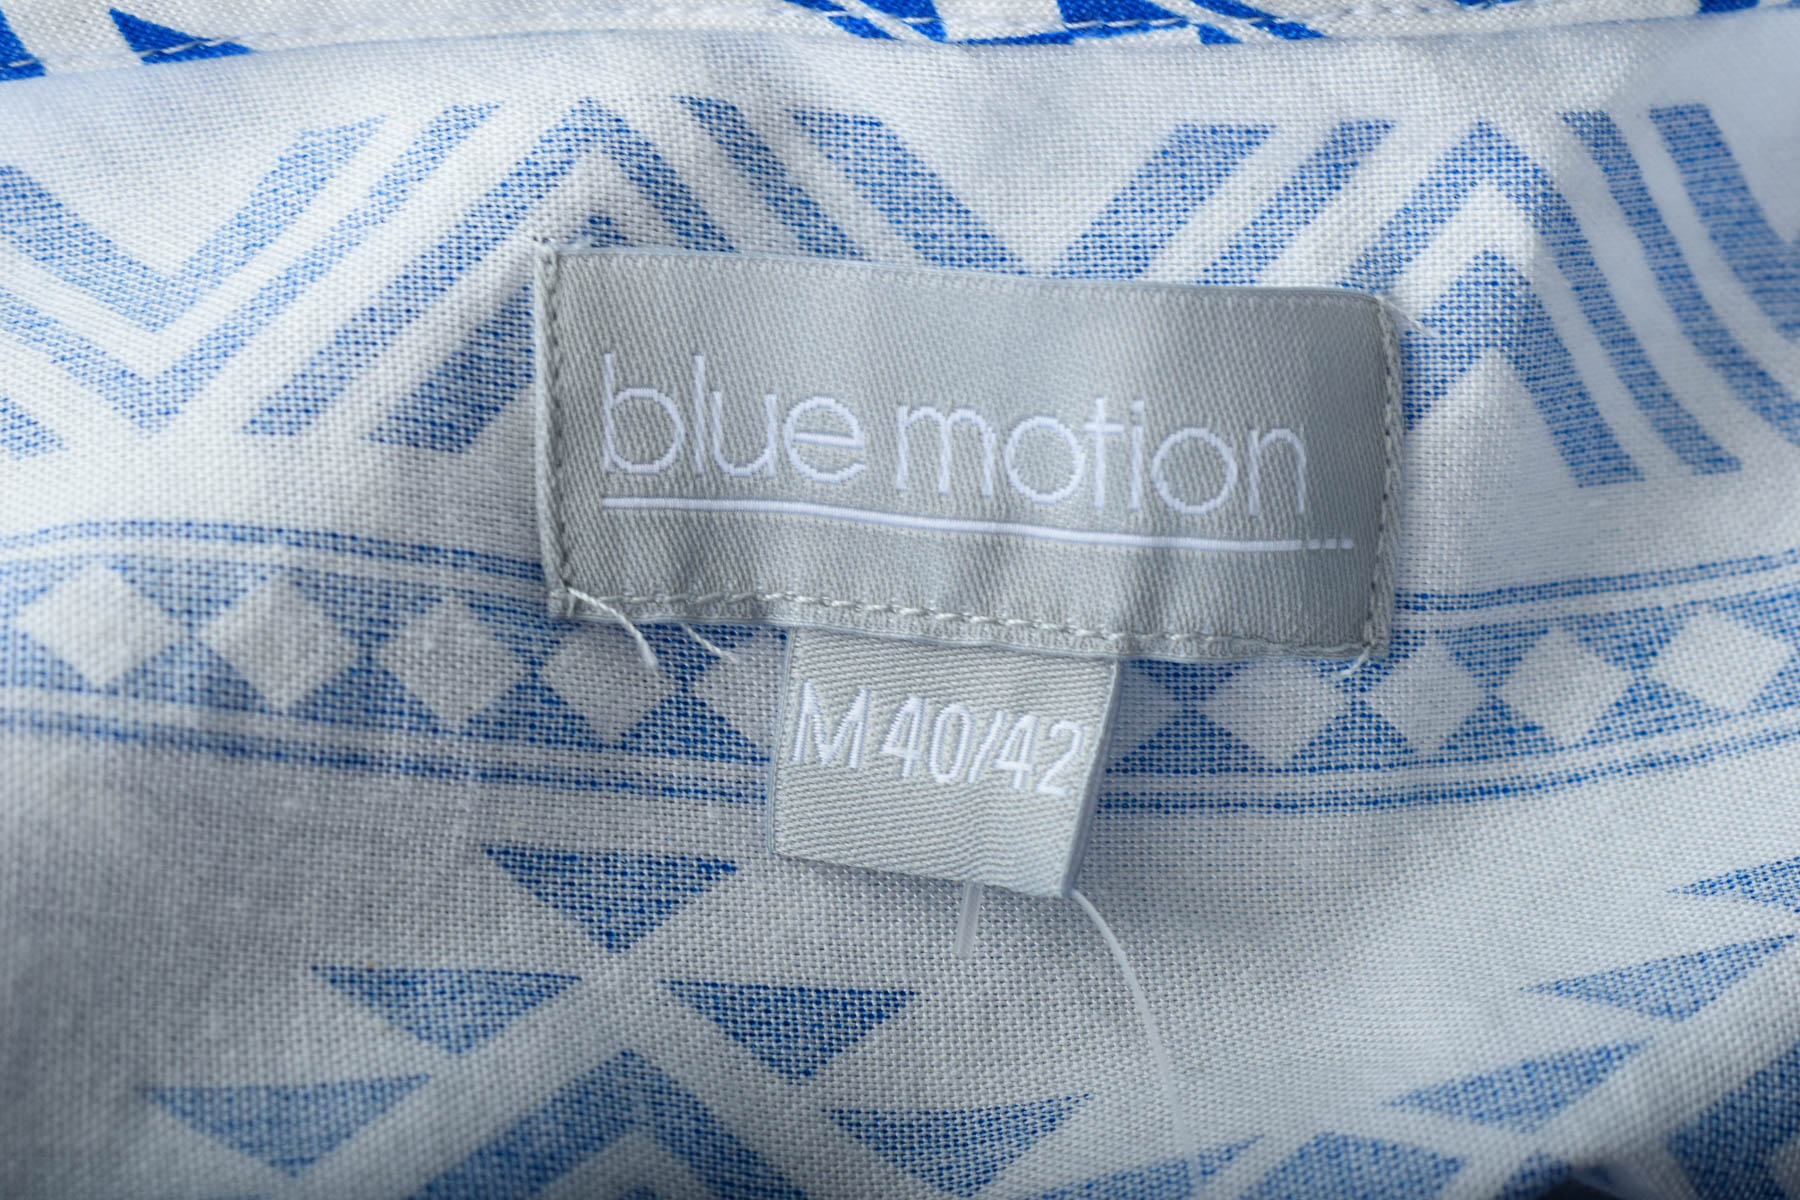 Φόρεμα - Blue Motion - 2